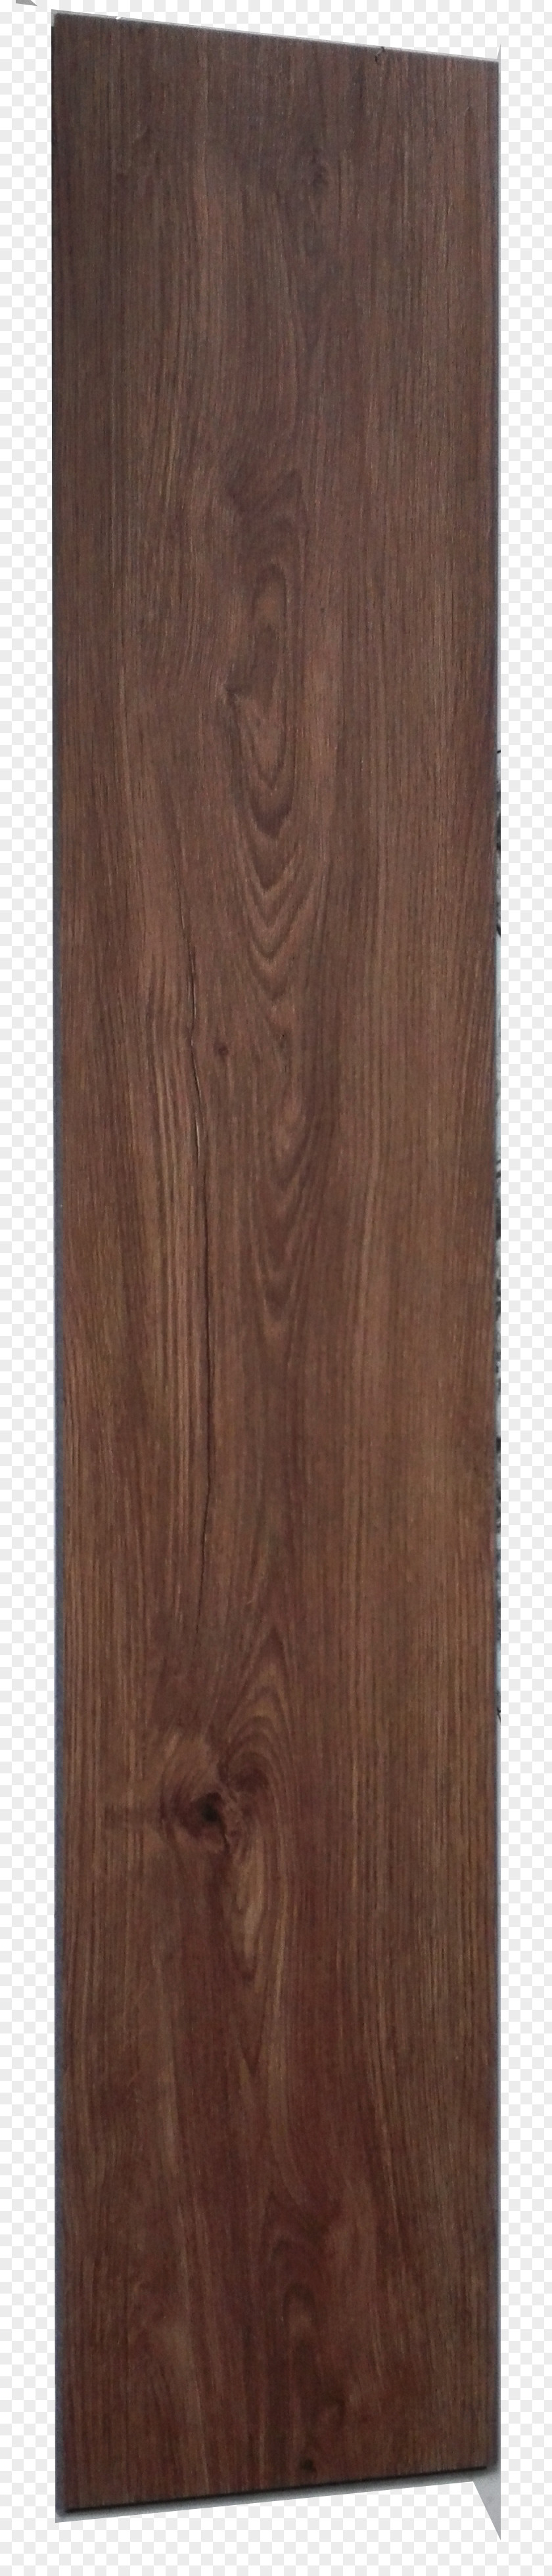 Wood Laminate Flooring Pavement Suelo De PVC PNG